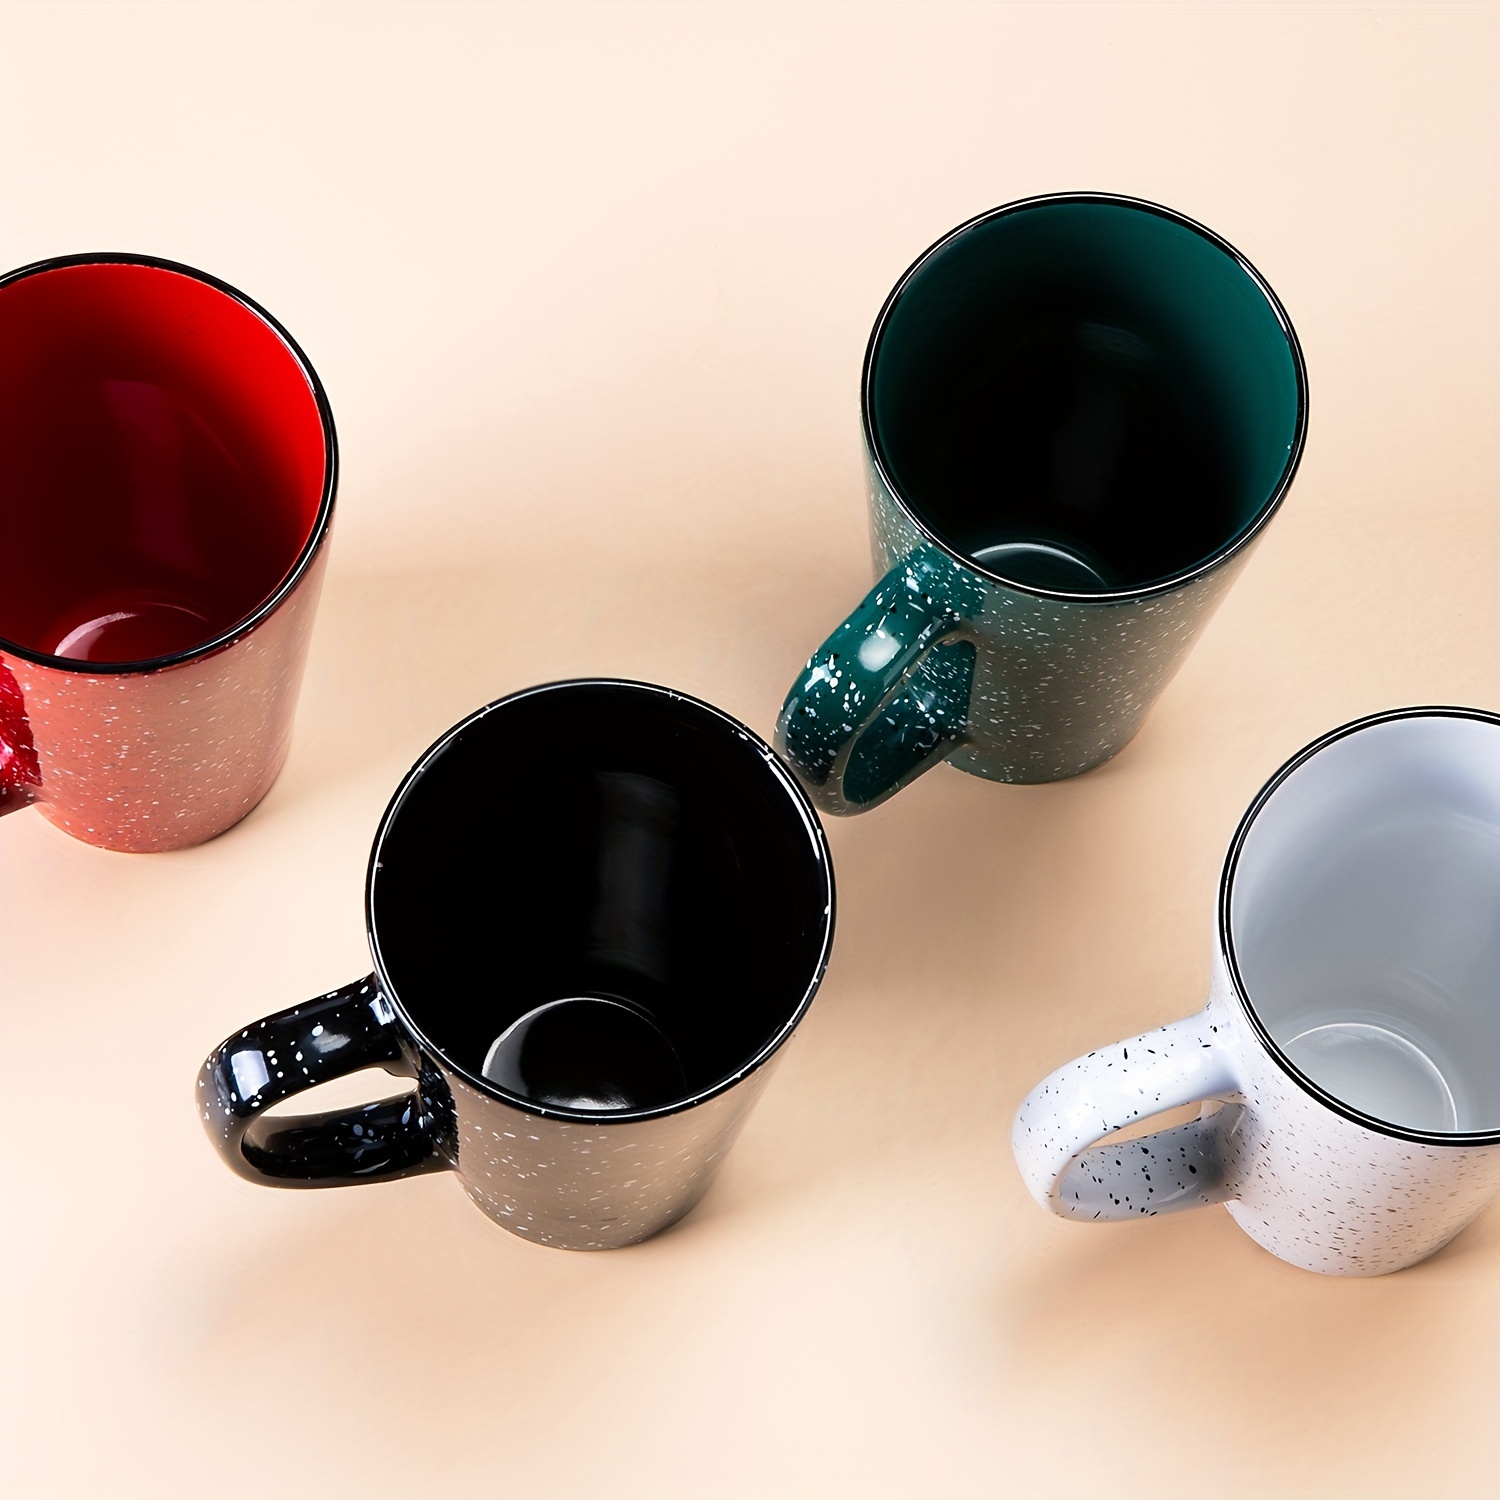  Serami Juego de tazas de café originales de 11 onzas color  crema, tazas de cerámica ideales para juego de cocina, viajes y té  caliente, taza retro de casa de gofres con